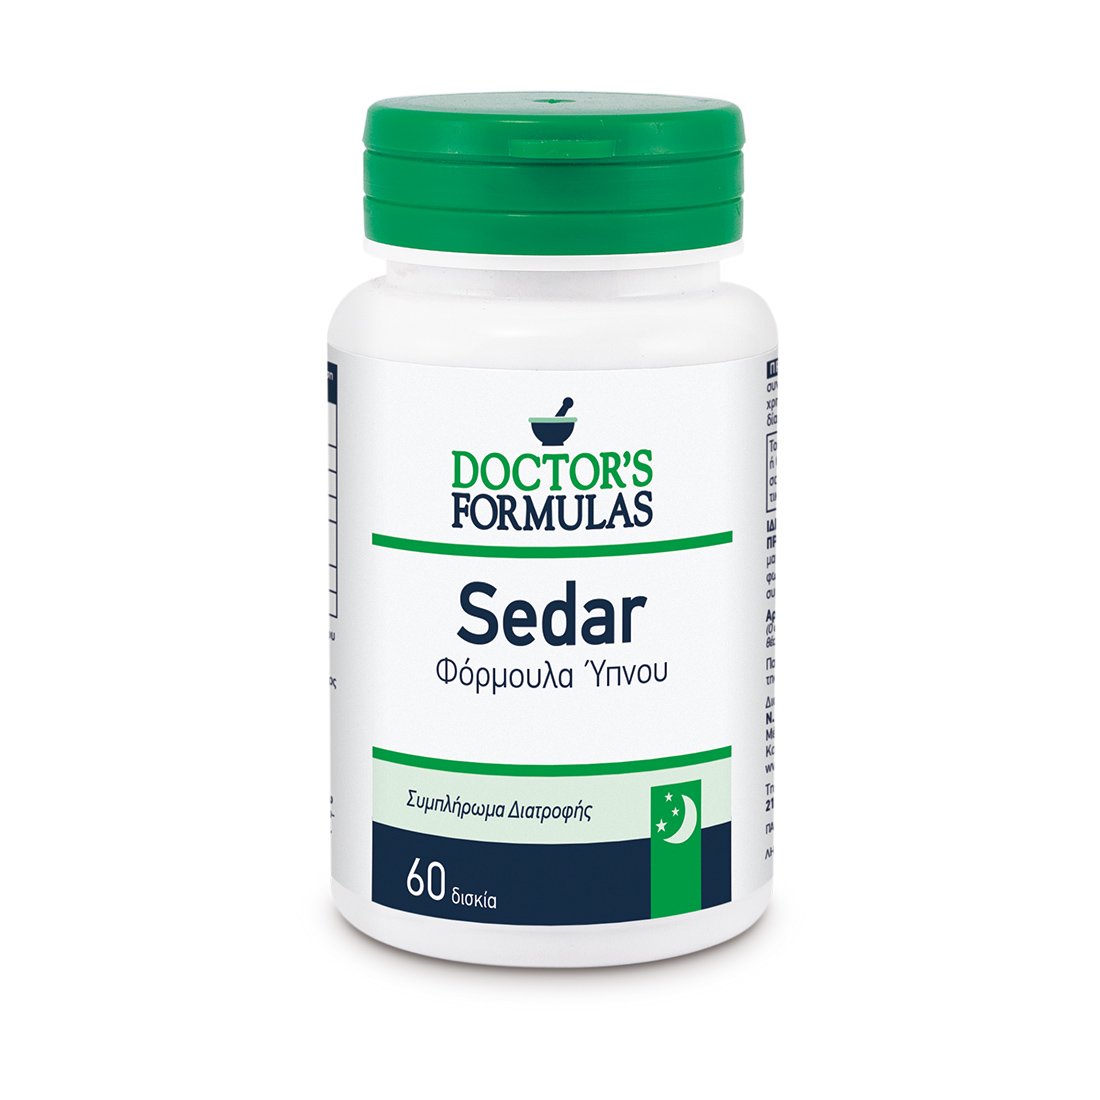 Doctor’s Formulas Sedar 60Tabs,Συμπλήρωμα Διατροφής για την Καταπολέμηση της Αϋπνίας